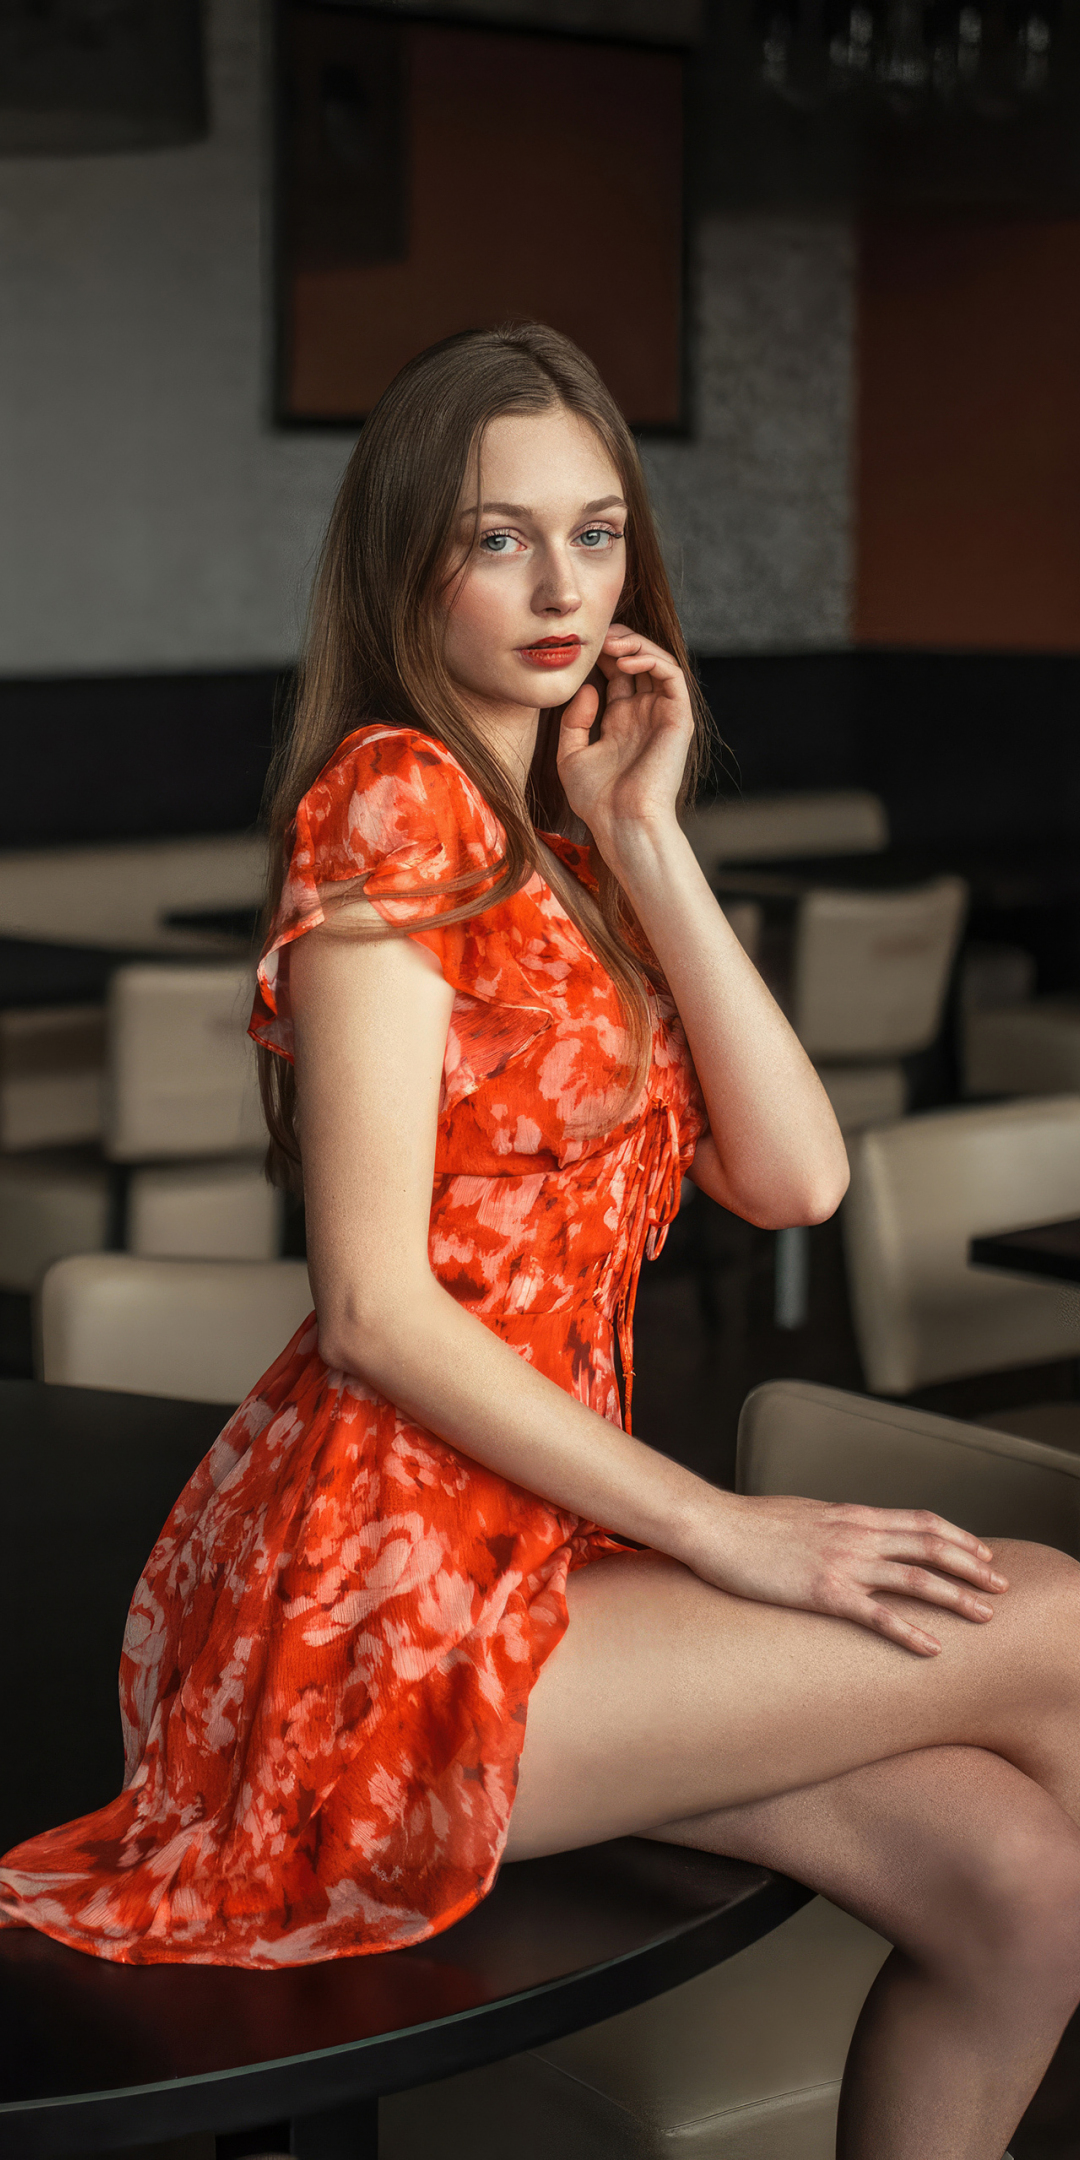 Brunette, orange skirt, pretty girl, 1080x2160 wallpaper